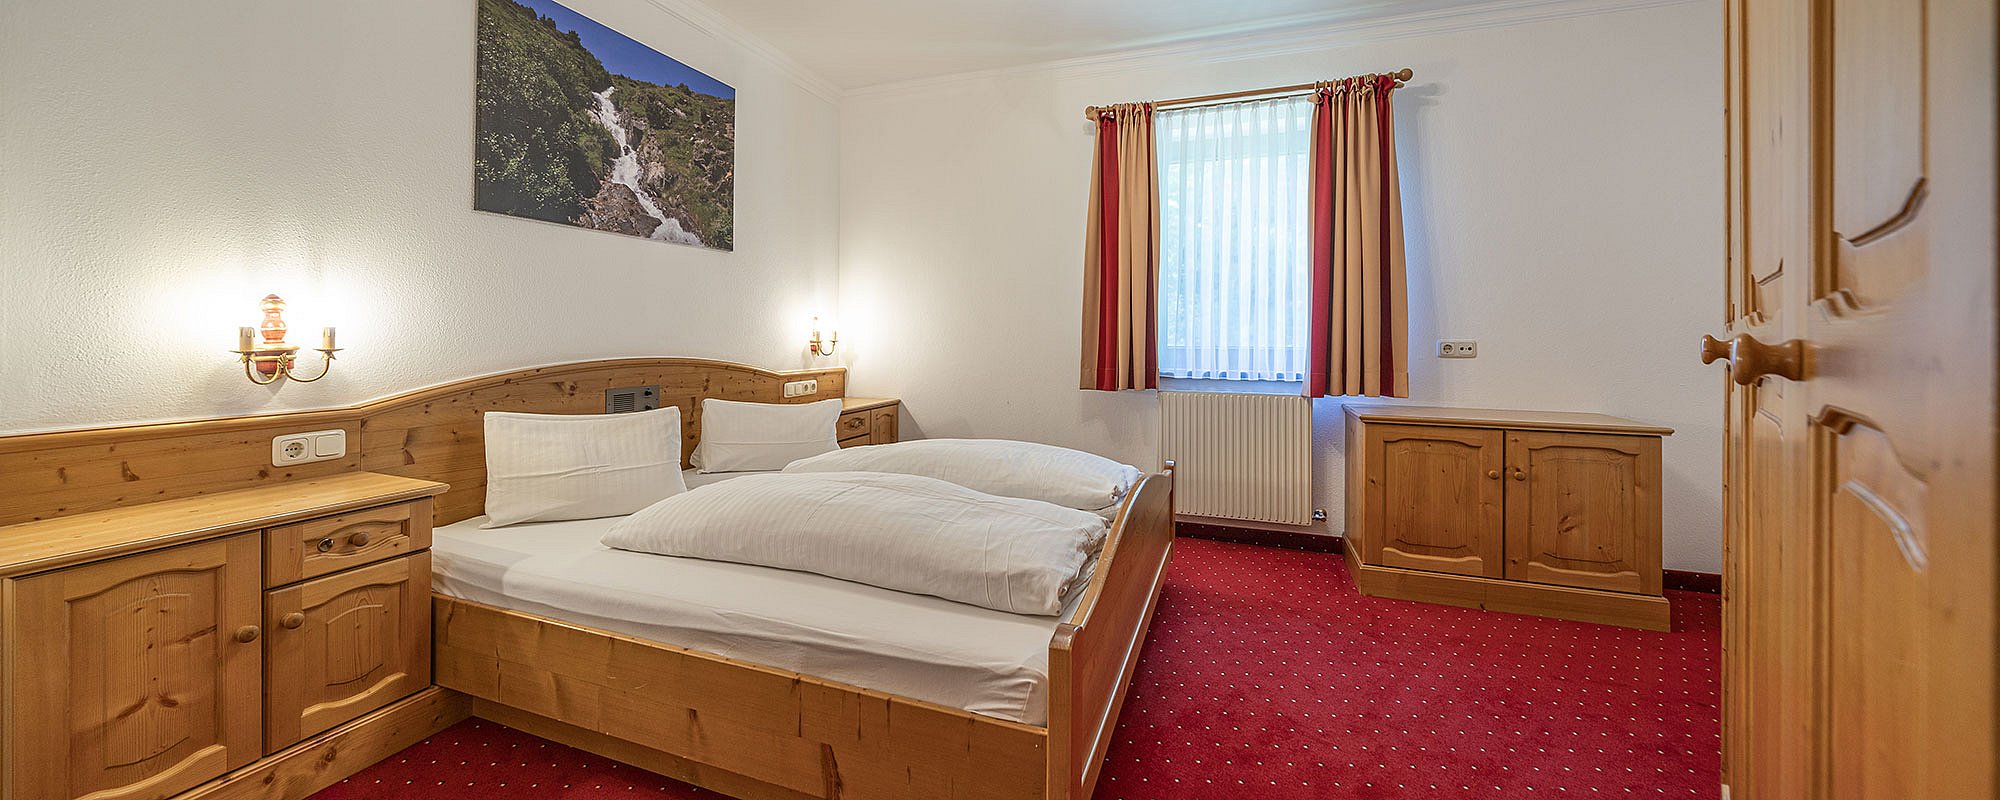 Appartement Wildspitze im Hotel Similaun